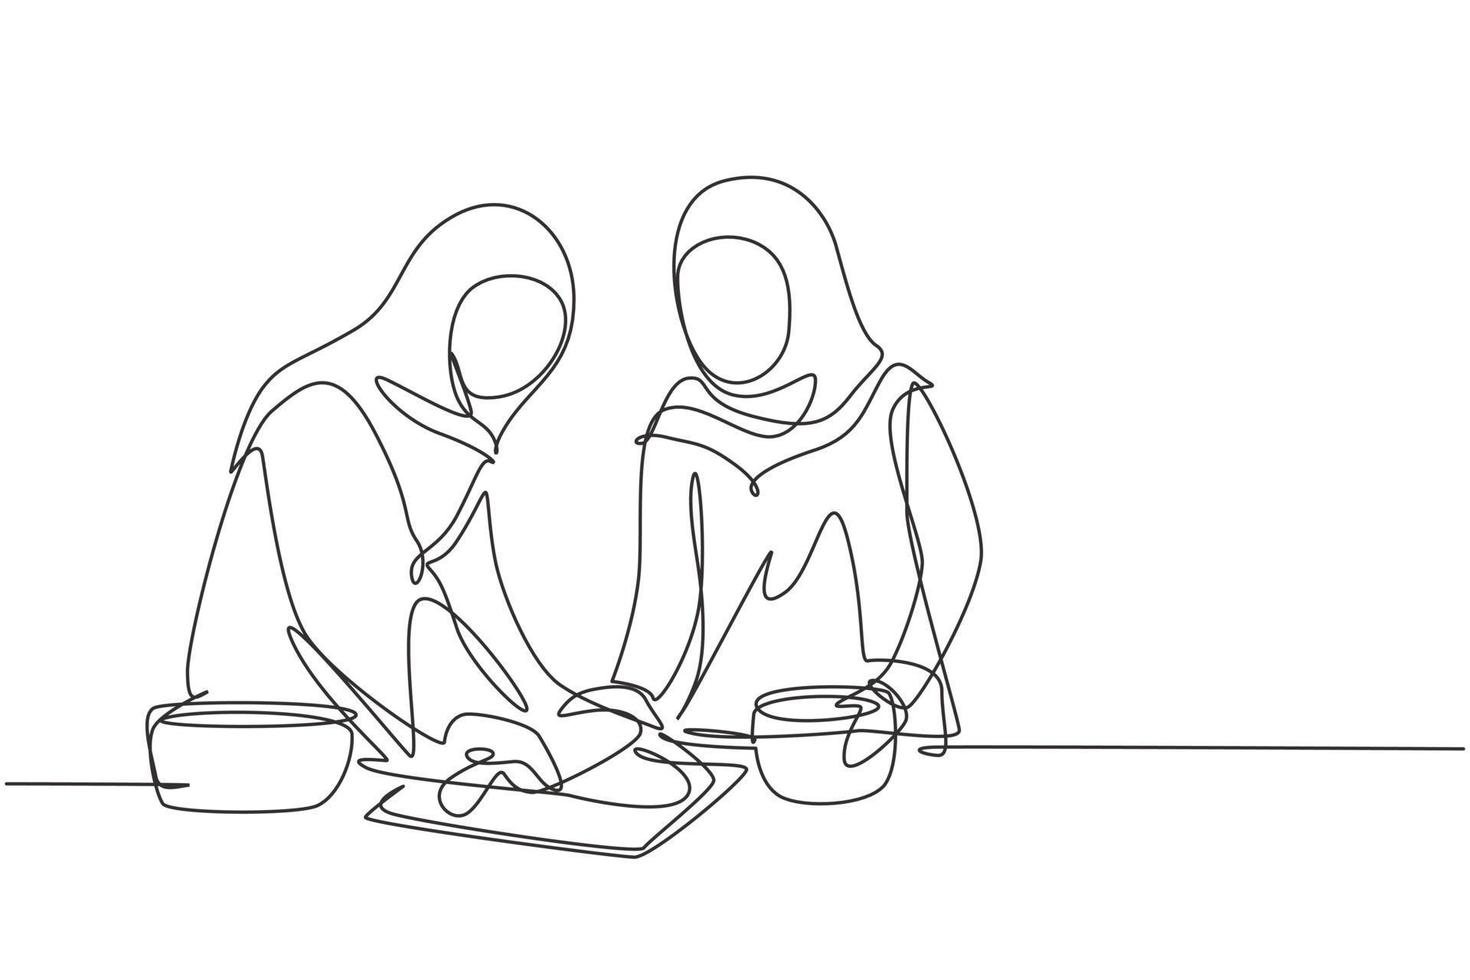 dessin continu d'une ligne deux femmes arabes faisant de la pâte à biscuits à l'aide d'un rouleau à pâtisserie sur une table de cuisine confortable. faire de la boulangerie et de la pizza maison à la maison. illustration graphique de vecteur de conception de dessin à une seule ligne